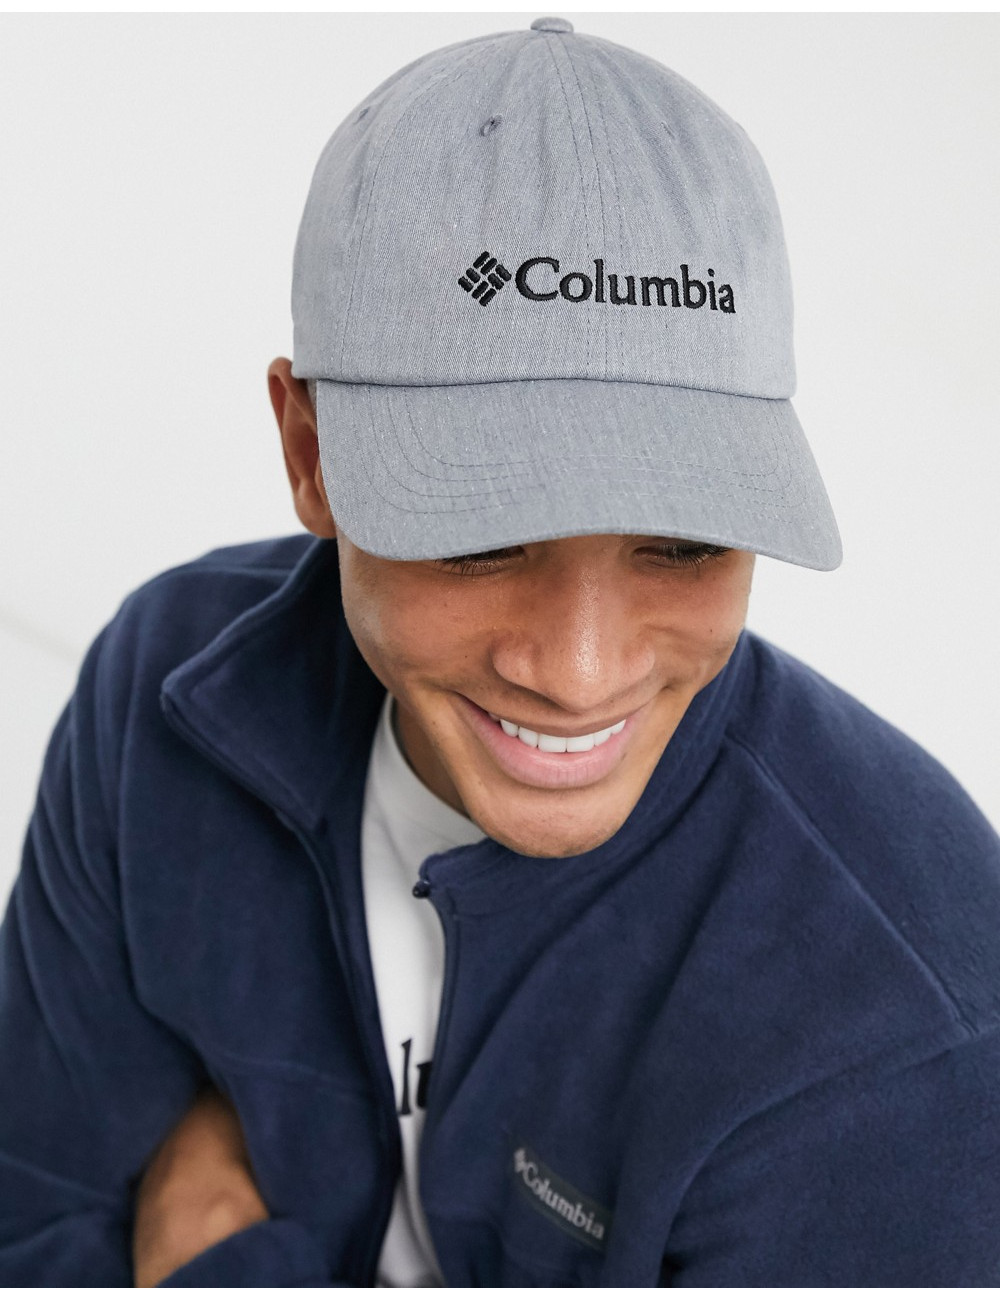 Columbia ROC II cap in grey